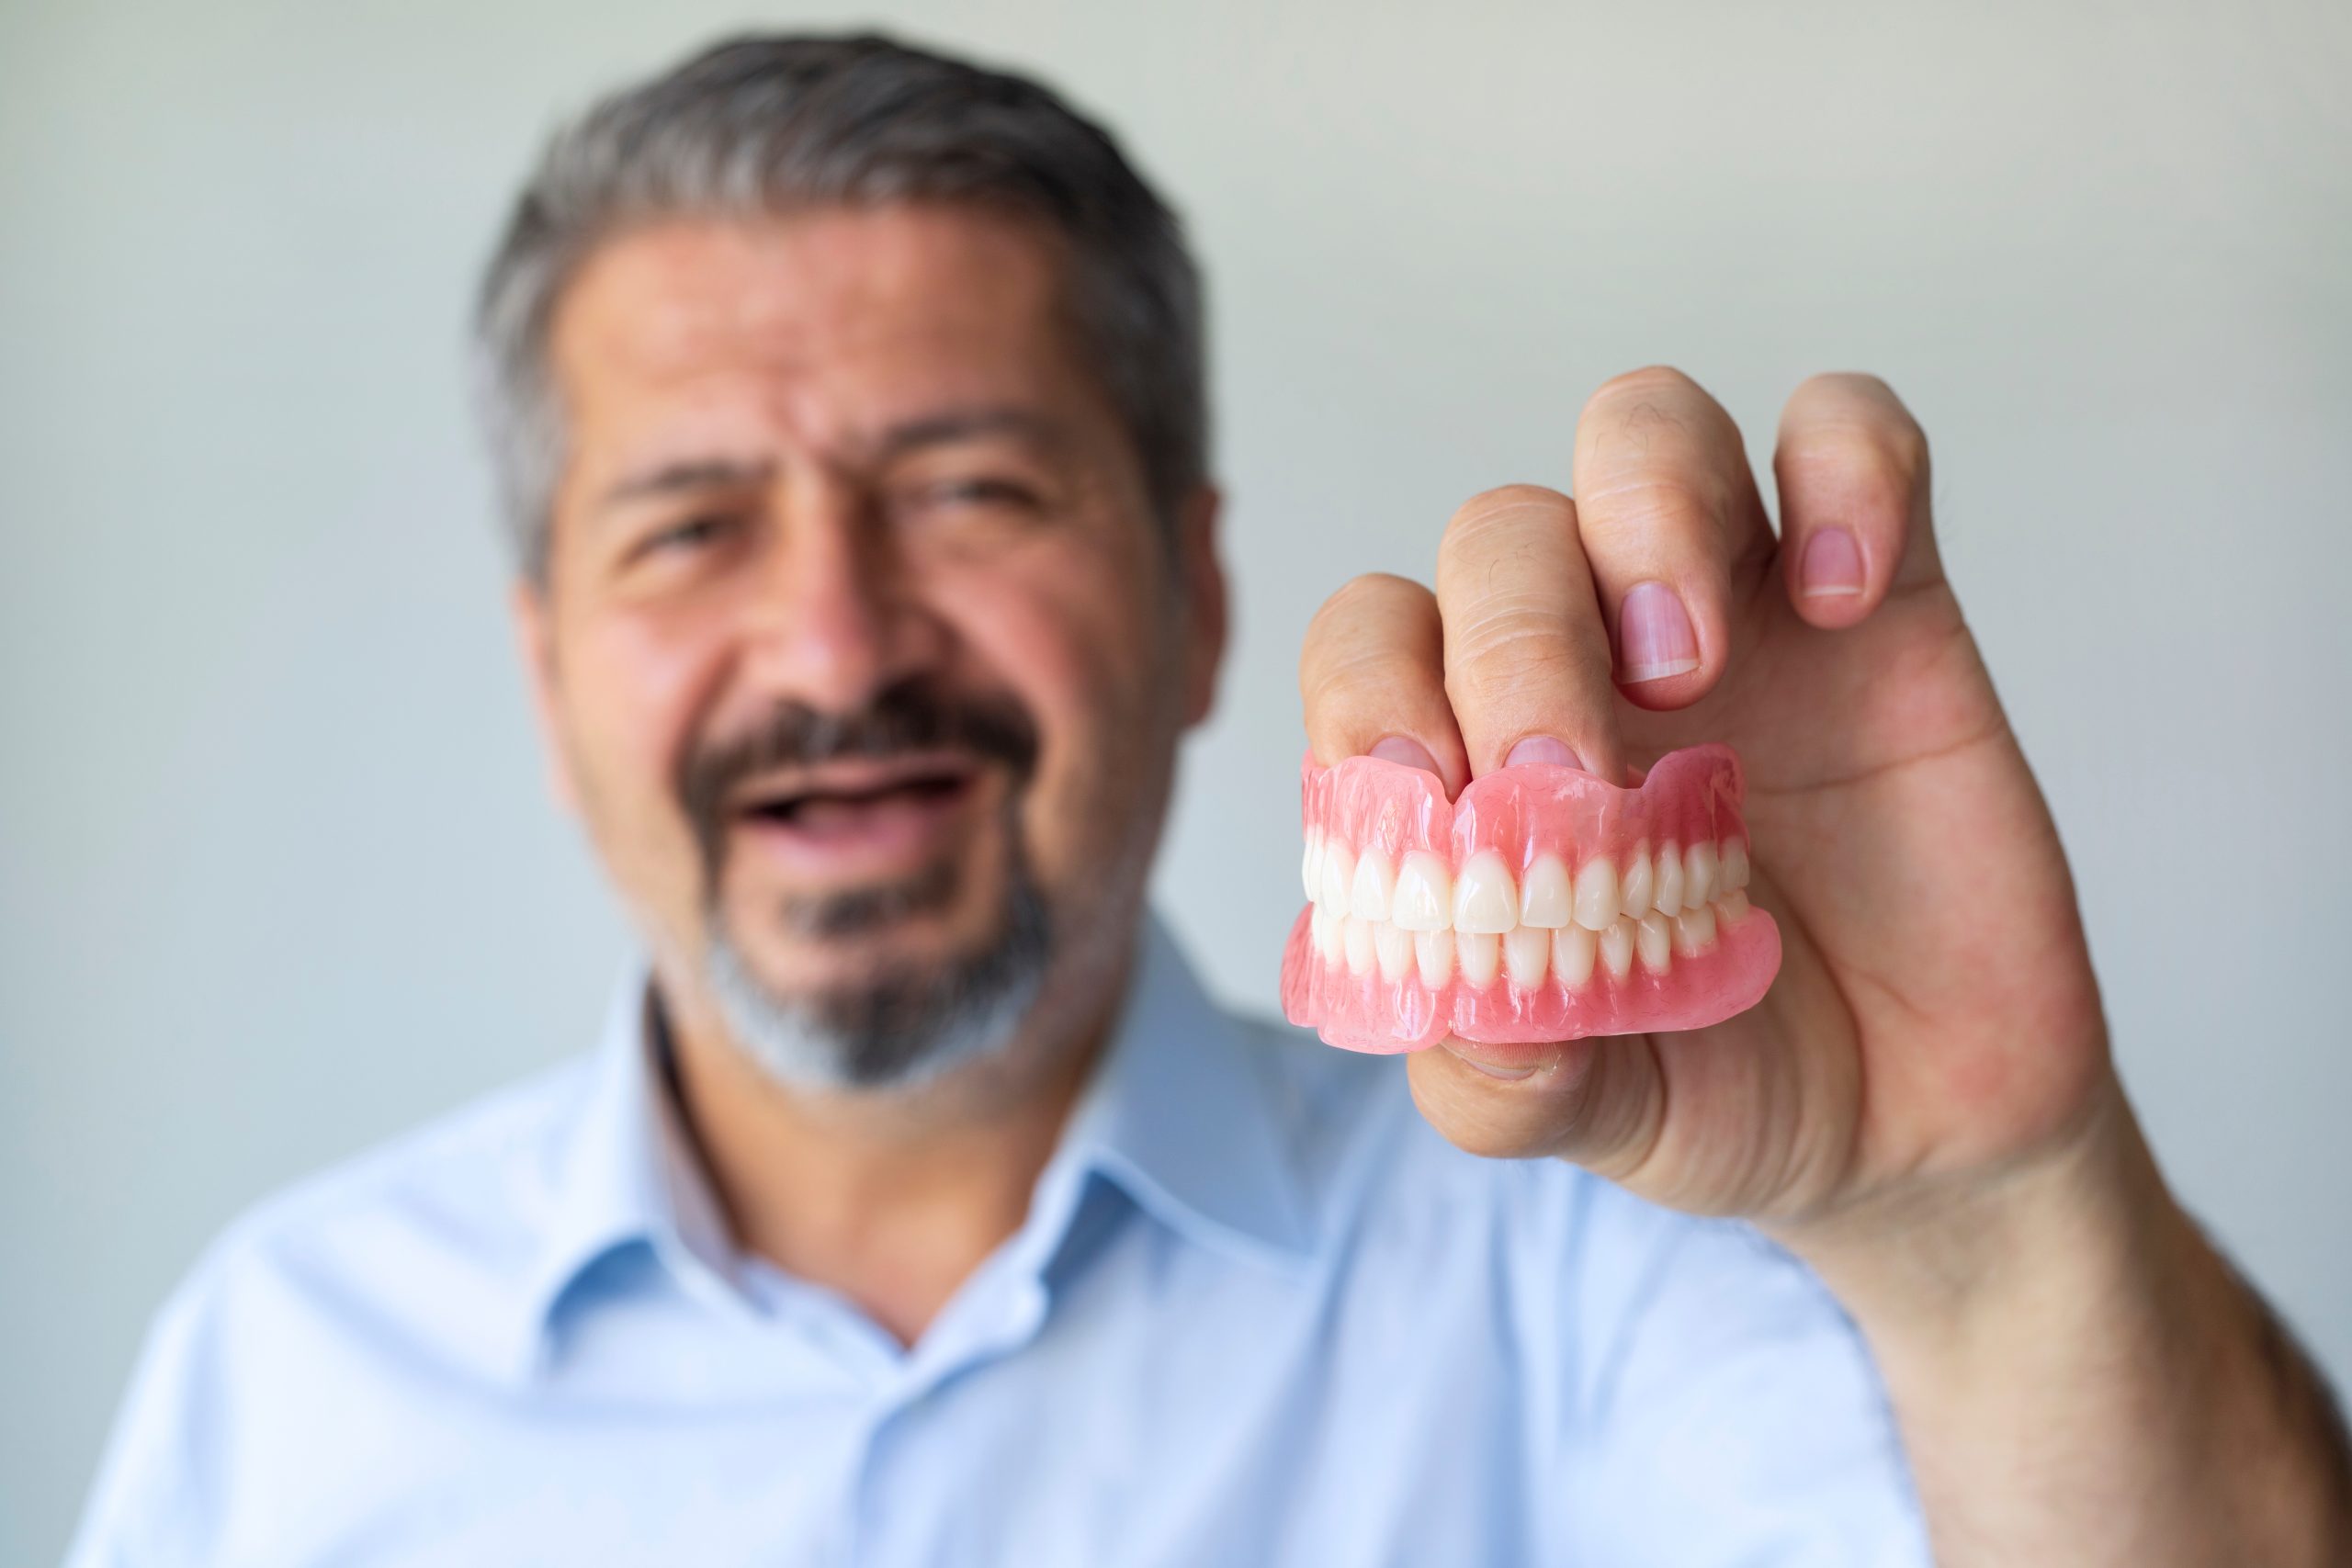 affordable dentures at value dental centres